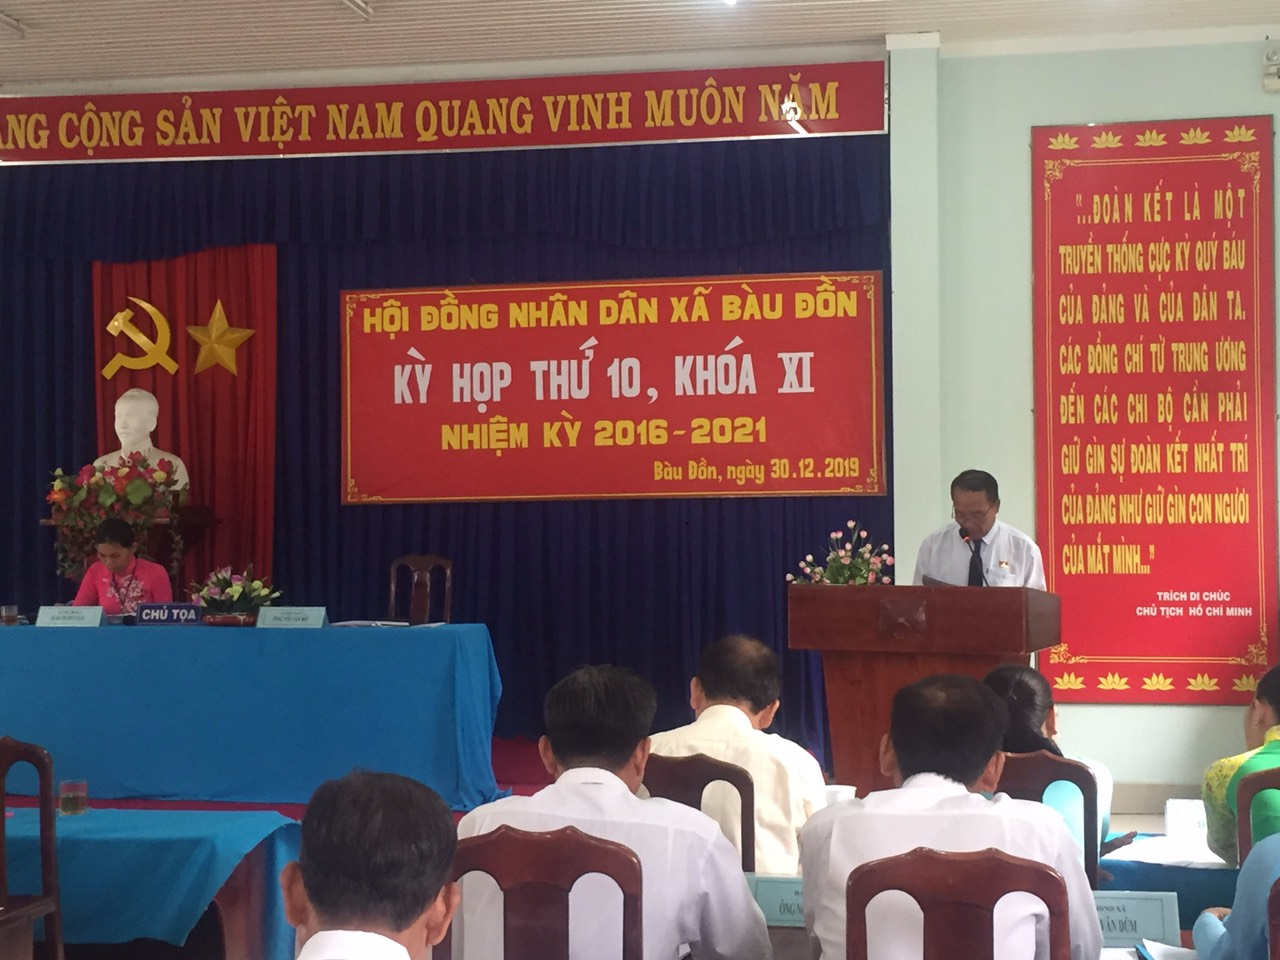 HĐND xã Bàu Đồn tổ chức kỳ họp thứ 10 khóa XI, nhiệm kỳ 2016-2021